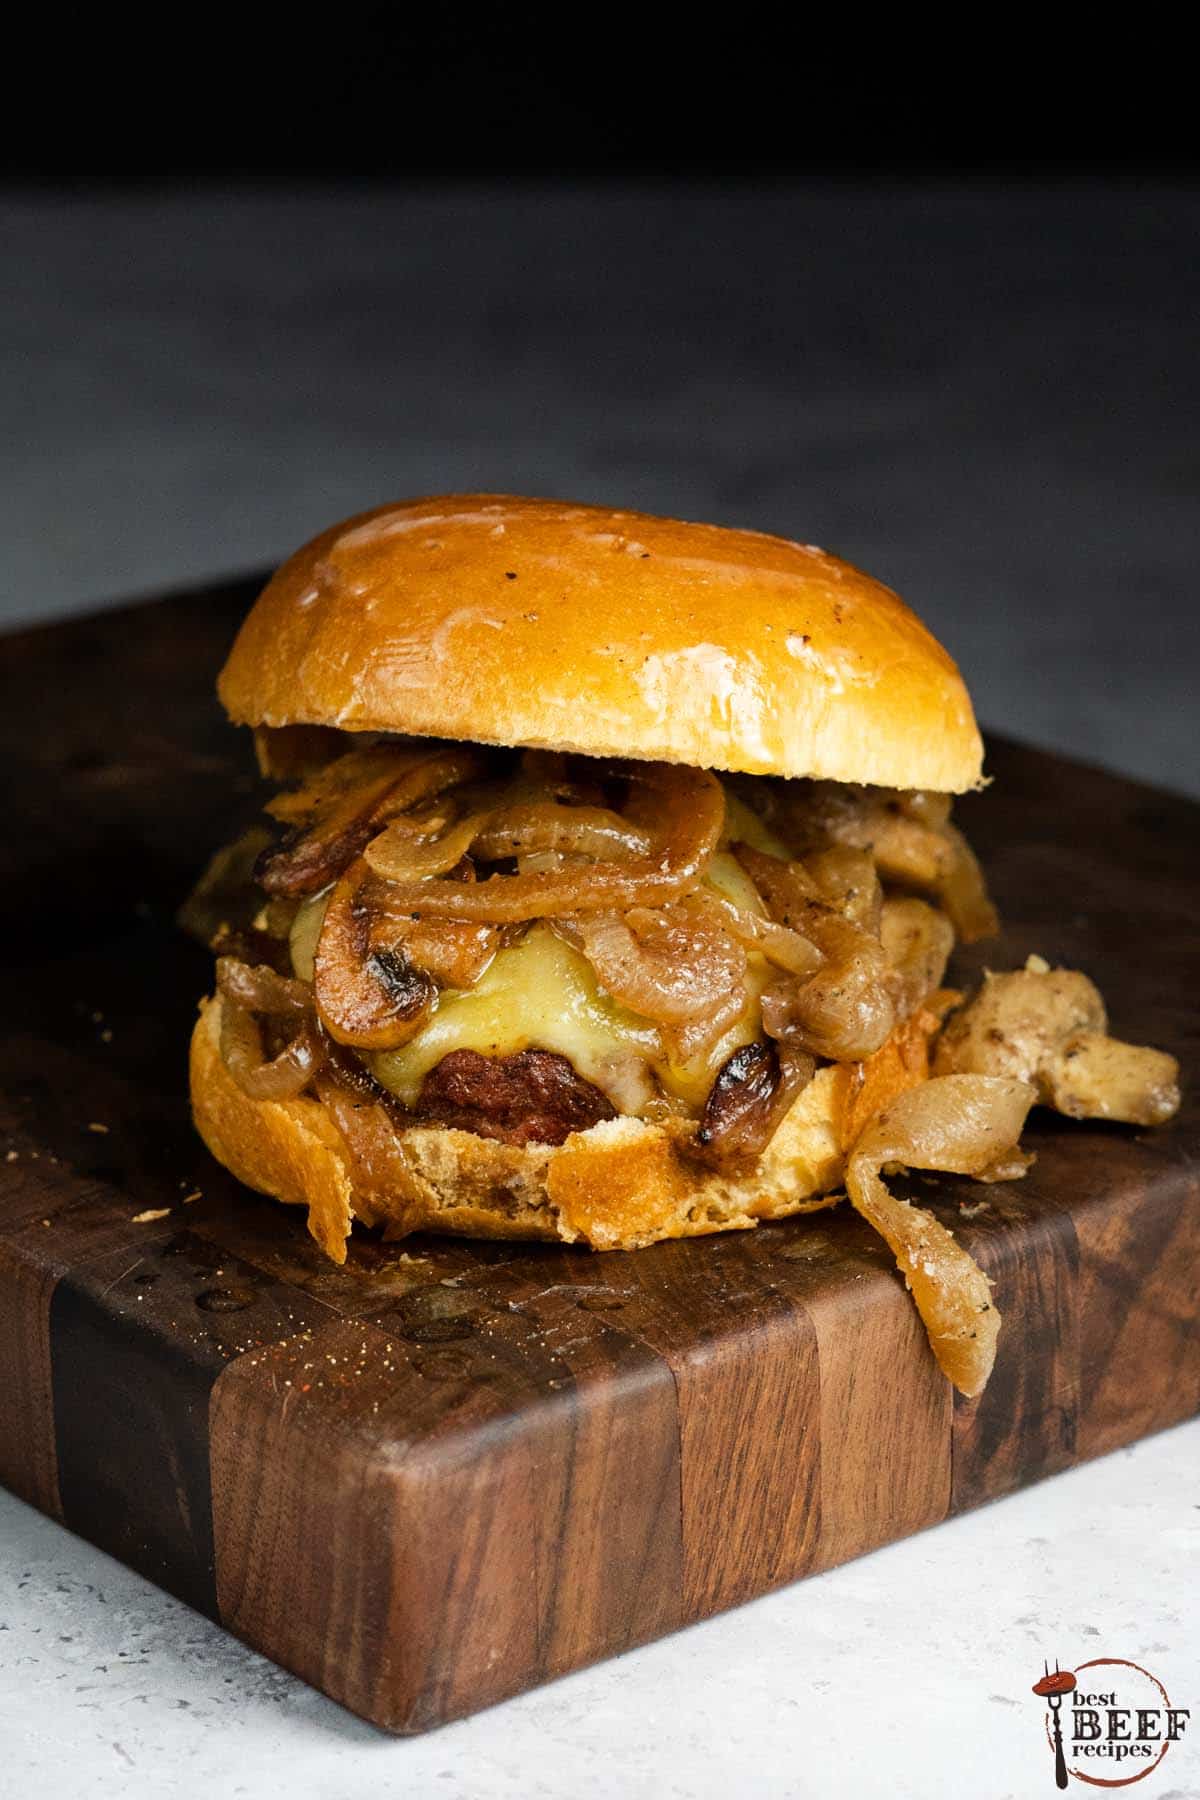 singular mushroom Swiss burger sitting on a wood cutting board